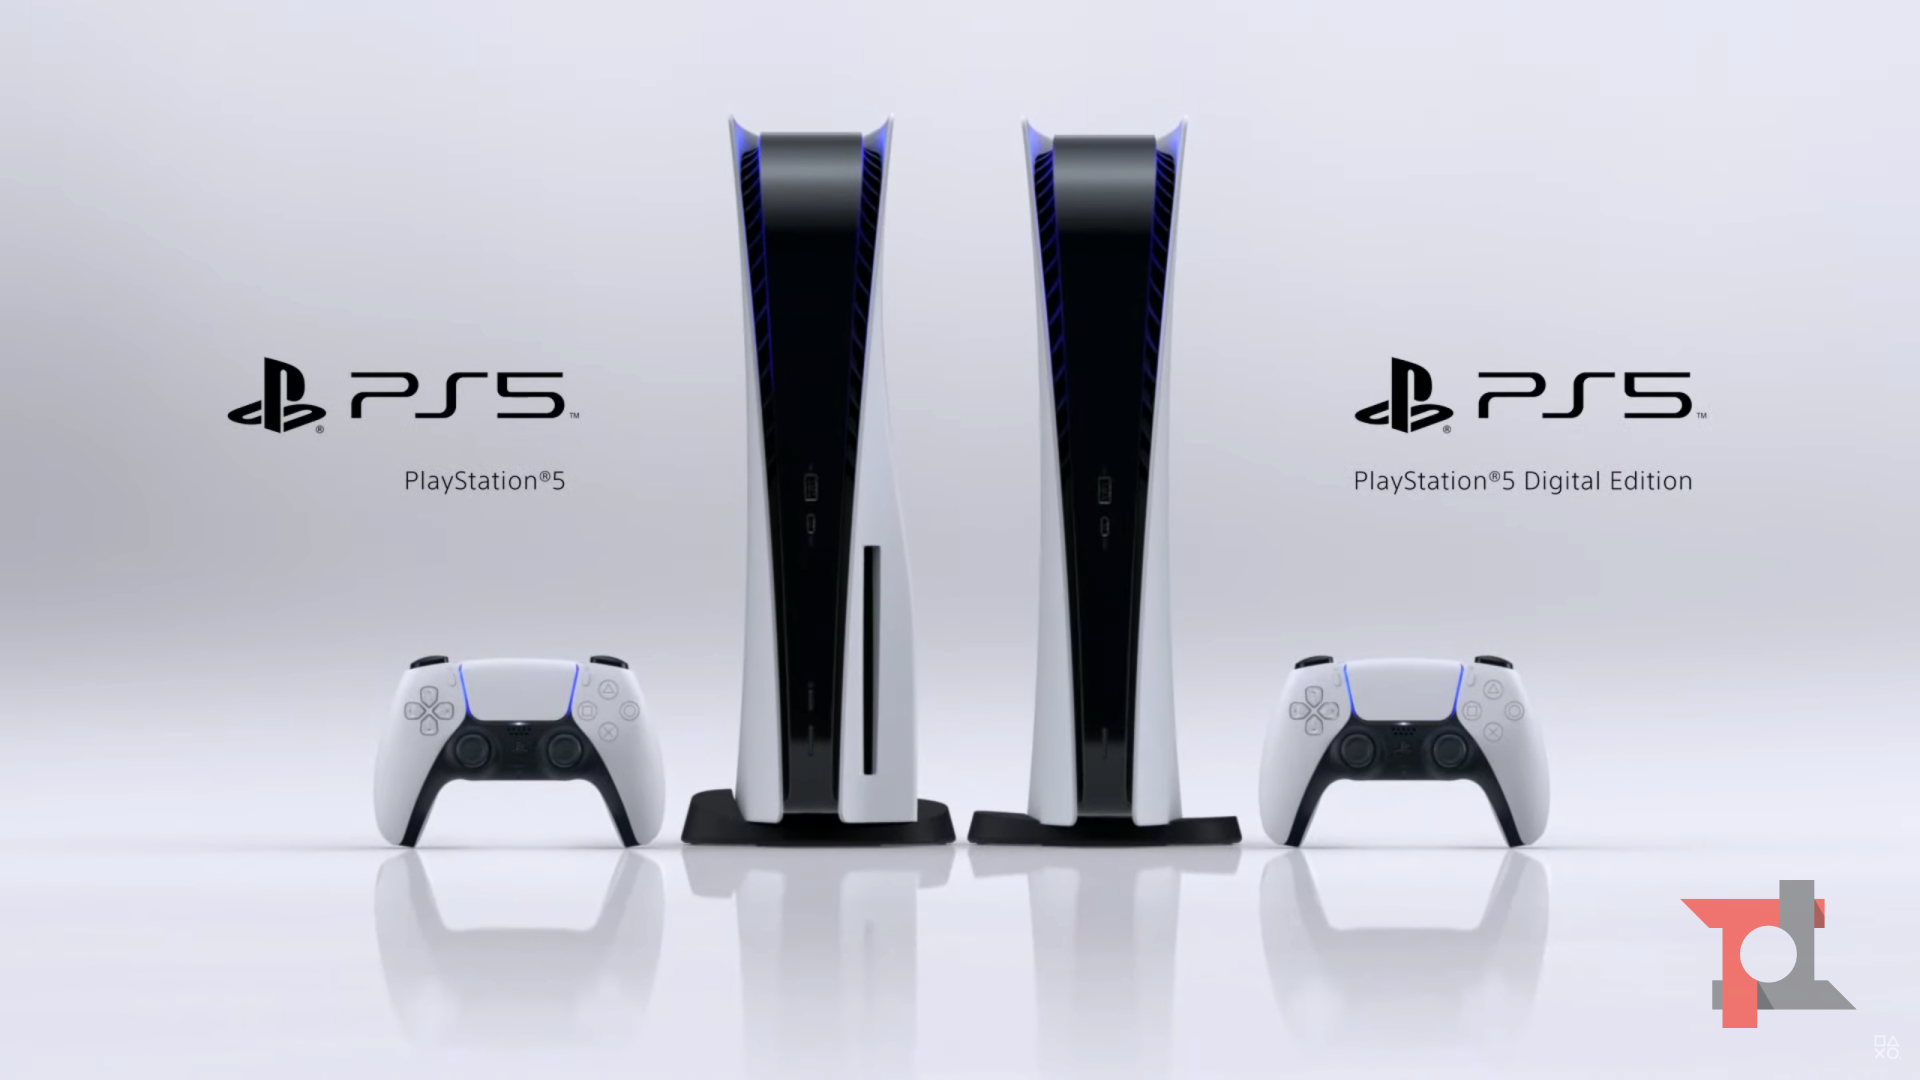 Ecco gli accessori che accompagneranno PlayStation 5